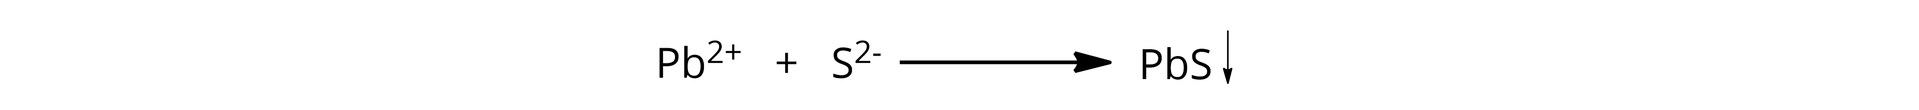 Wzór reakcji: pe be indeks górny dwa plus dodać es indeks górny dwa minus strzałka w prawo  w prawo pe be es strzałka w dół, czyli kation ołowiowy dodać anion siarczkowy strzałka w prawo jedna cząsteczka siarczku ołowiu strzałka w dół.  